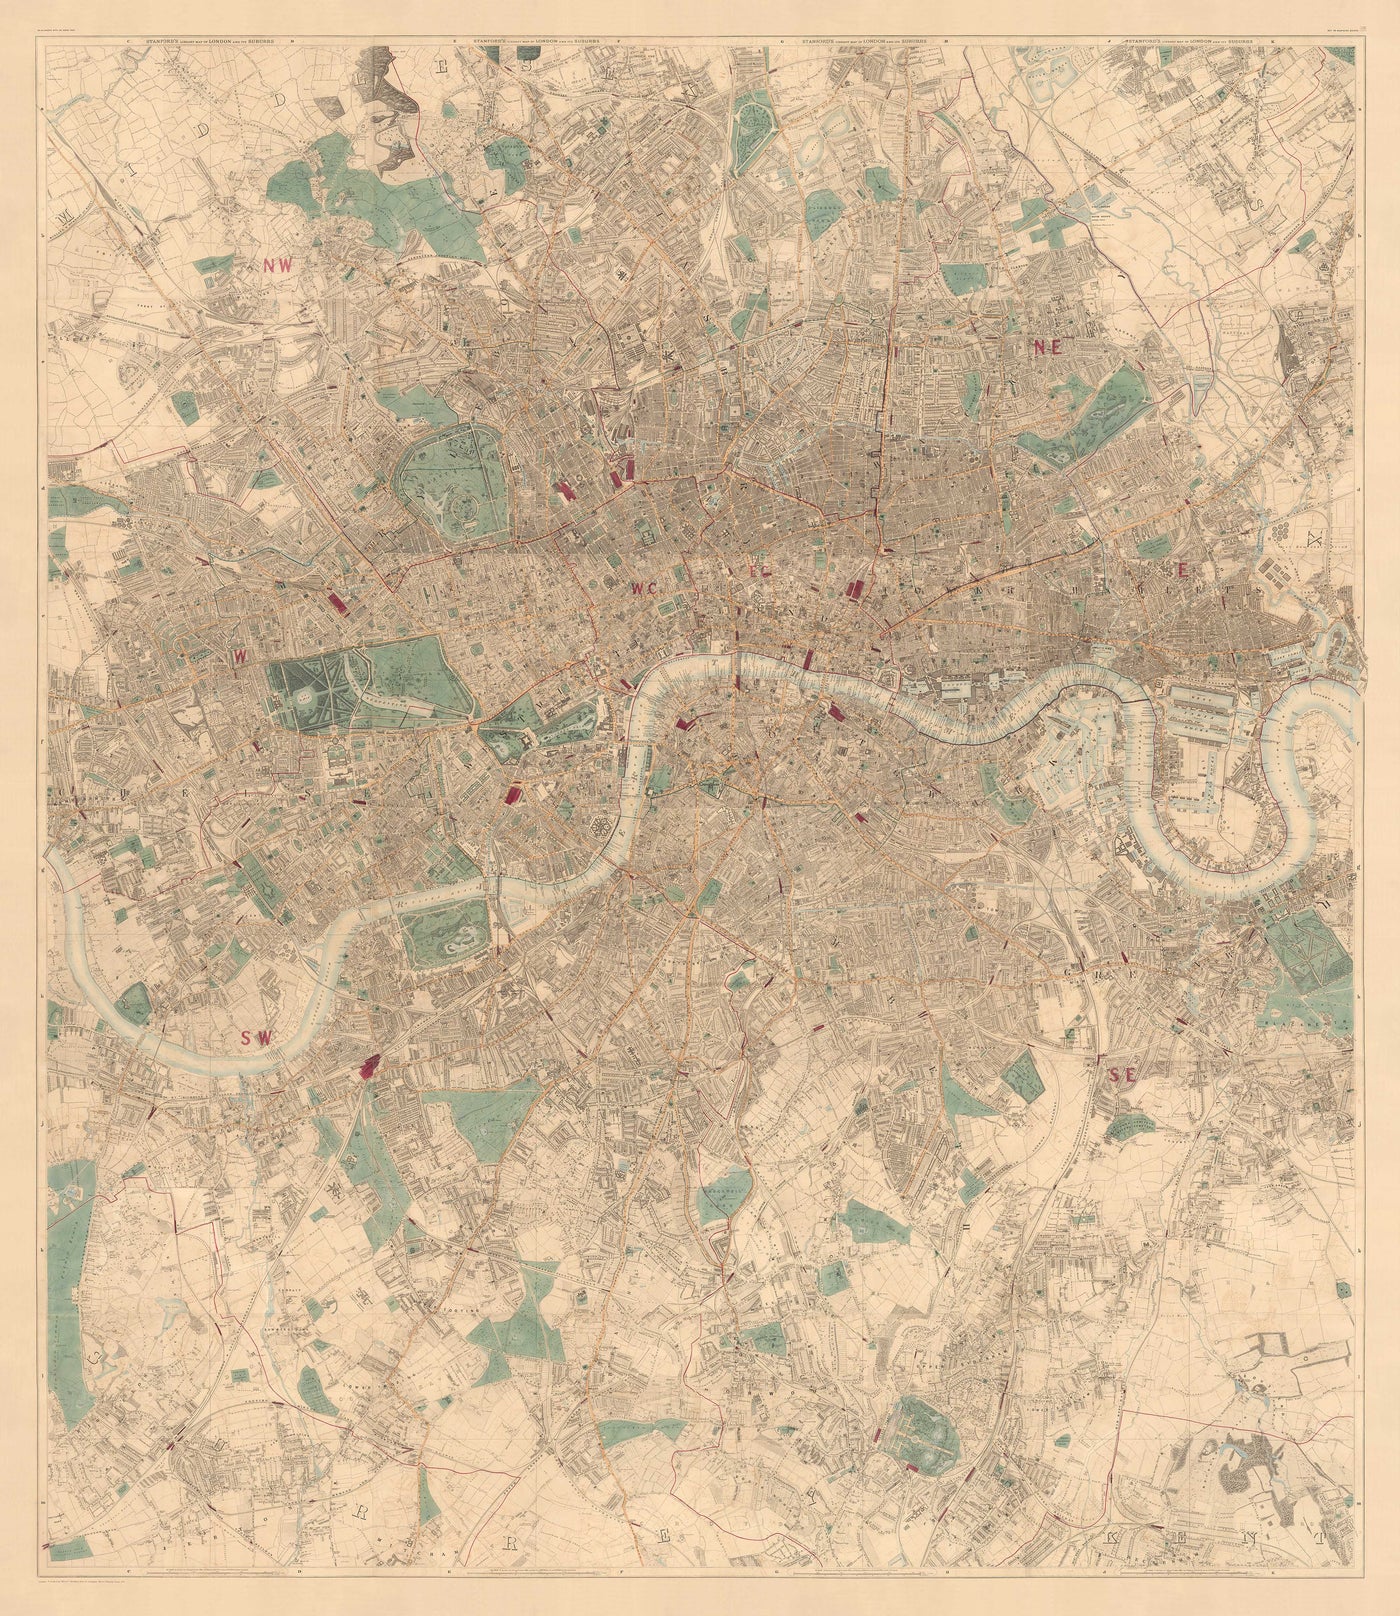 Grande carte ancienne de Londres par Edward Stanford (1862, 1891) - Monochrome, Blue Thames ou colorée à la main